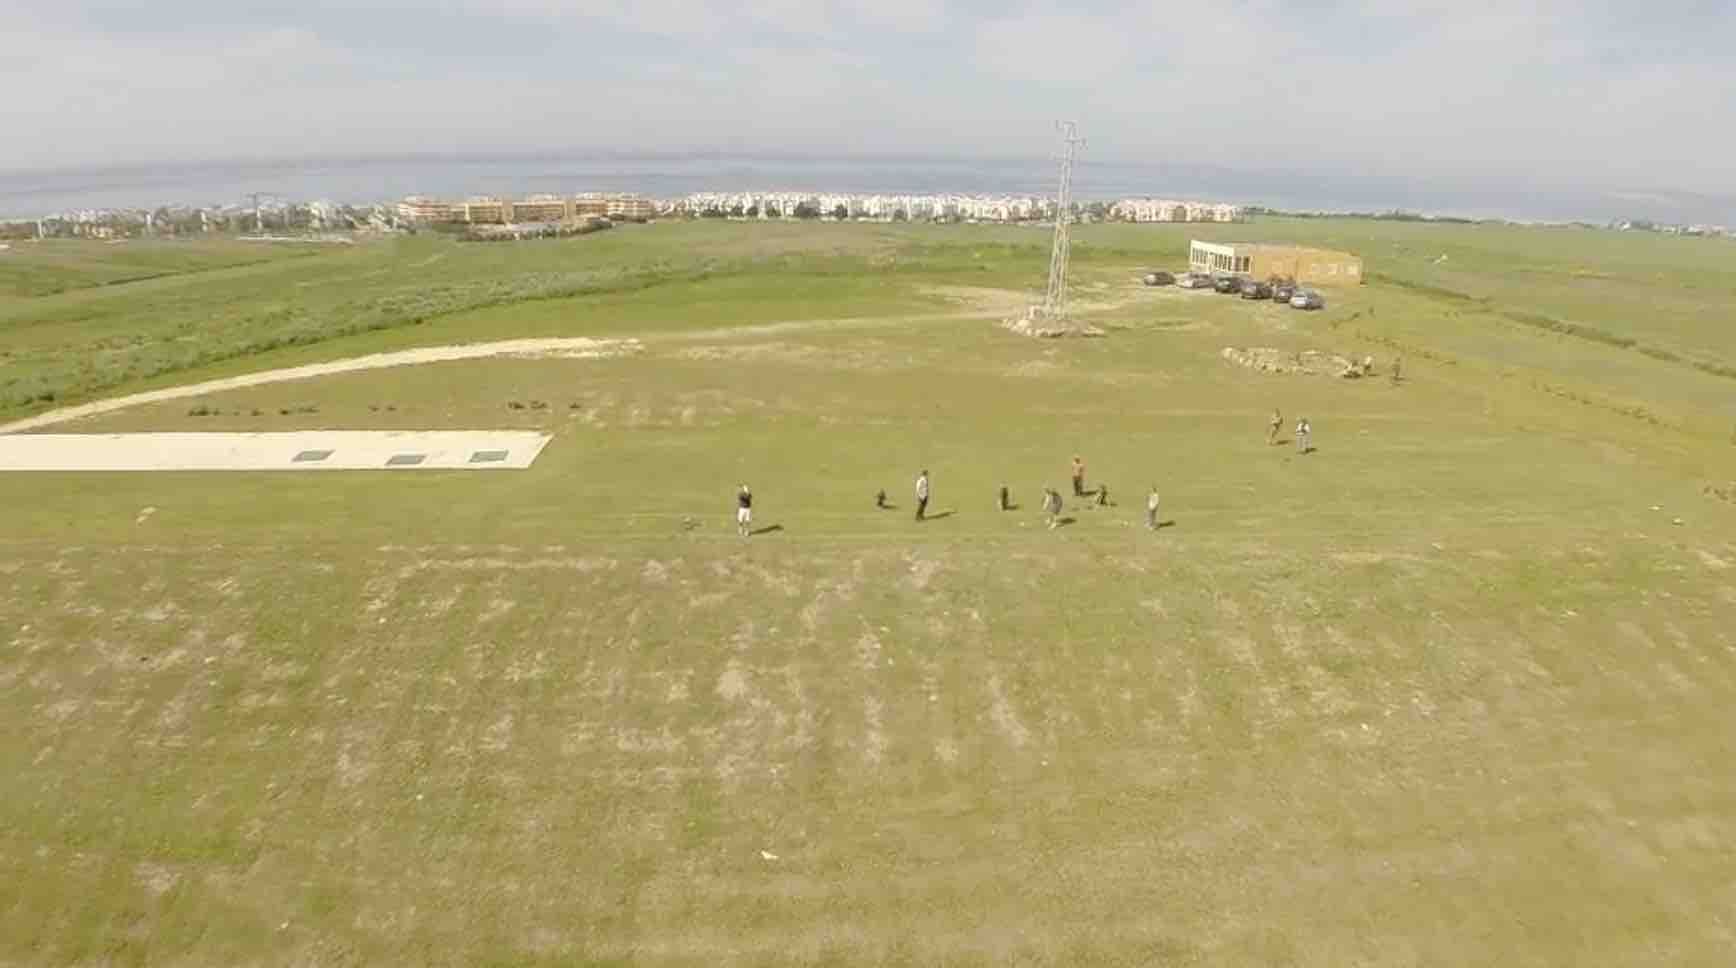 Los campos de golf: una puerta abierta "a promotores y especuladores" en Tarifa